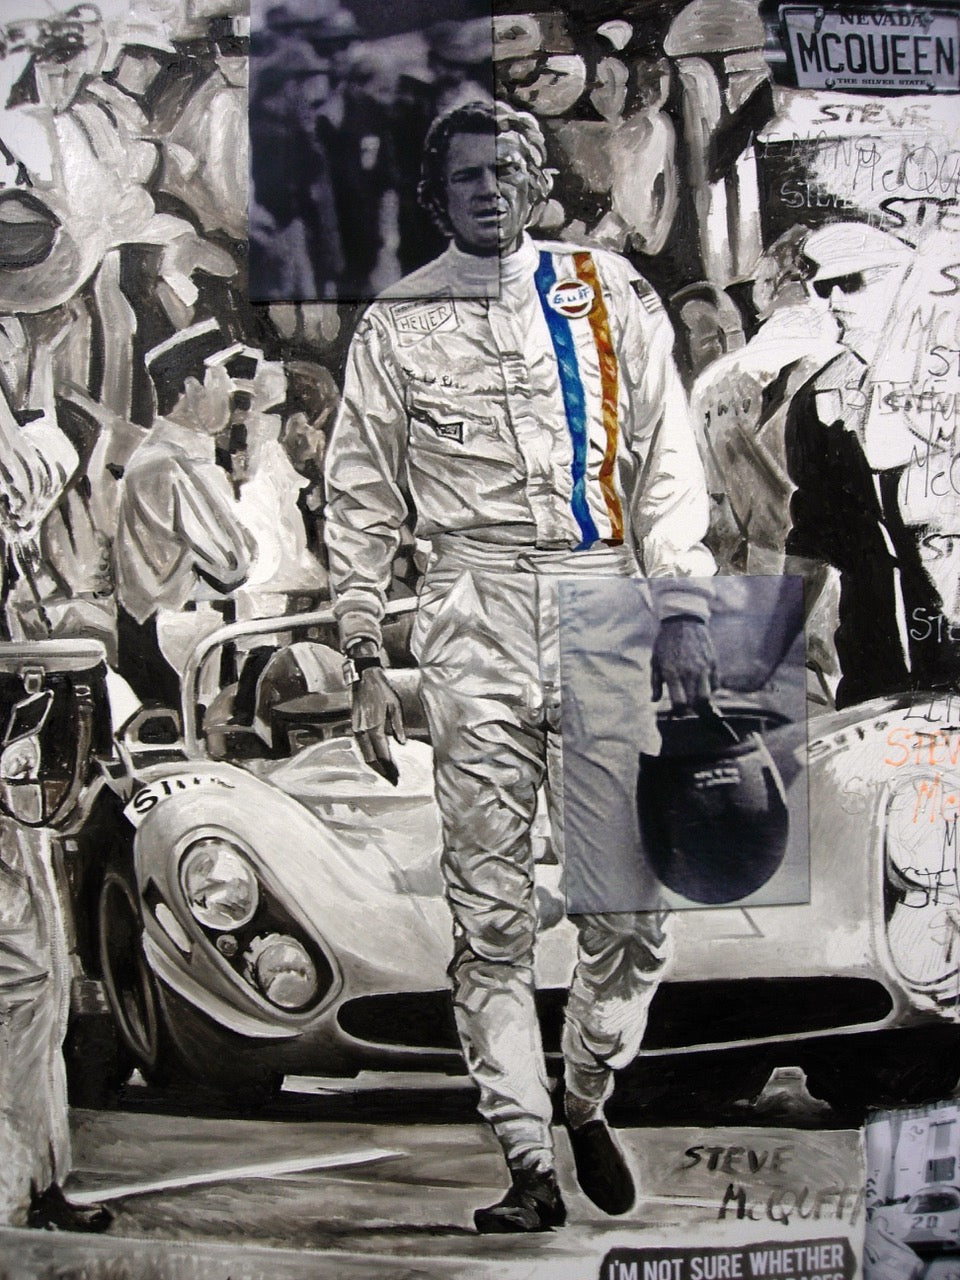 Steve McQueen in GULF racing suit